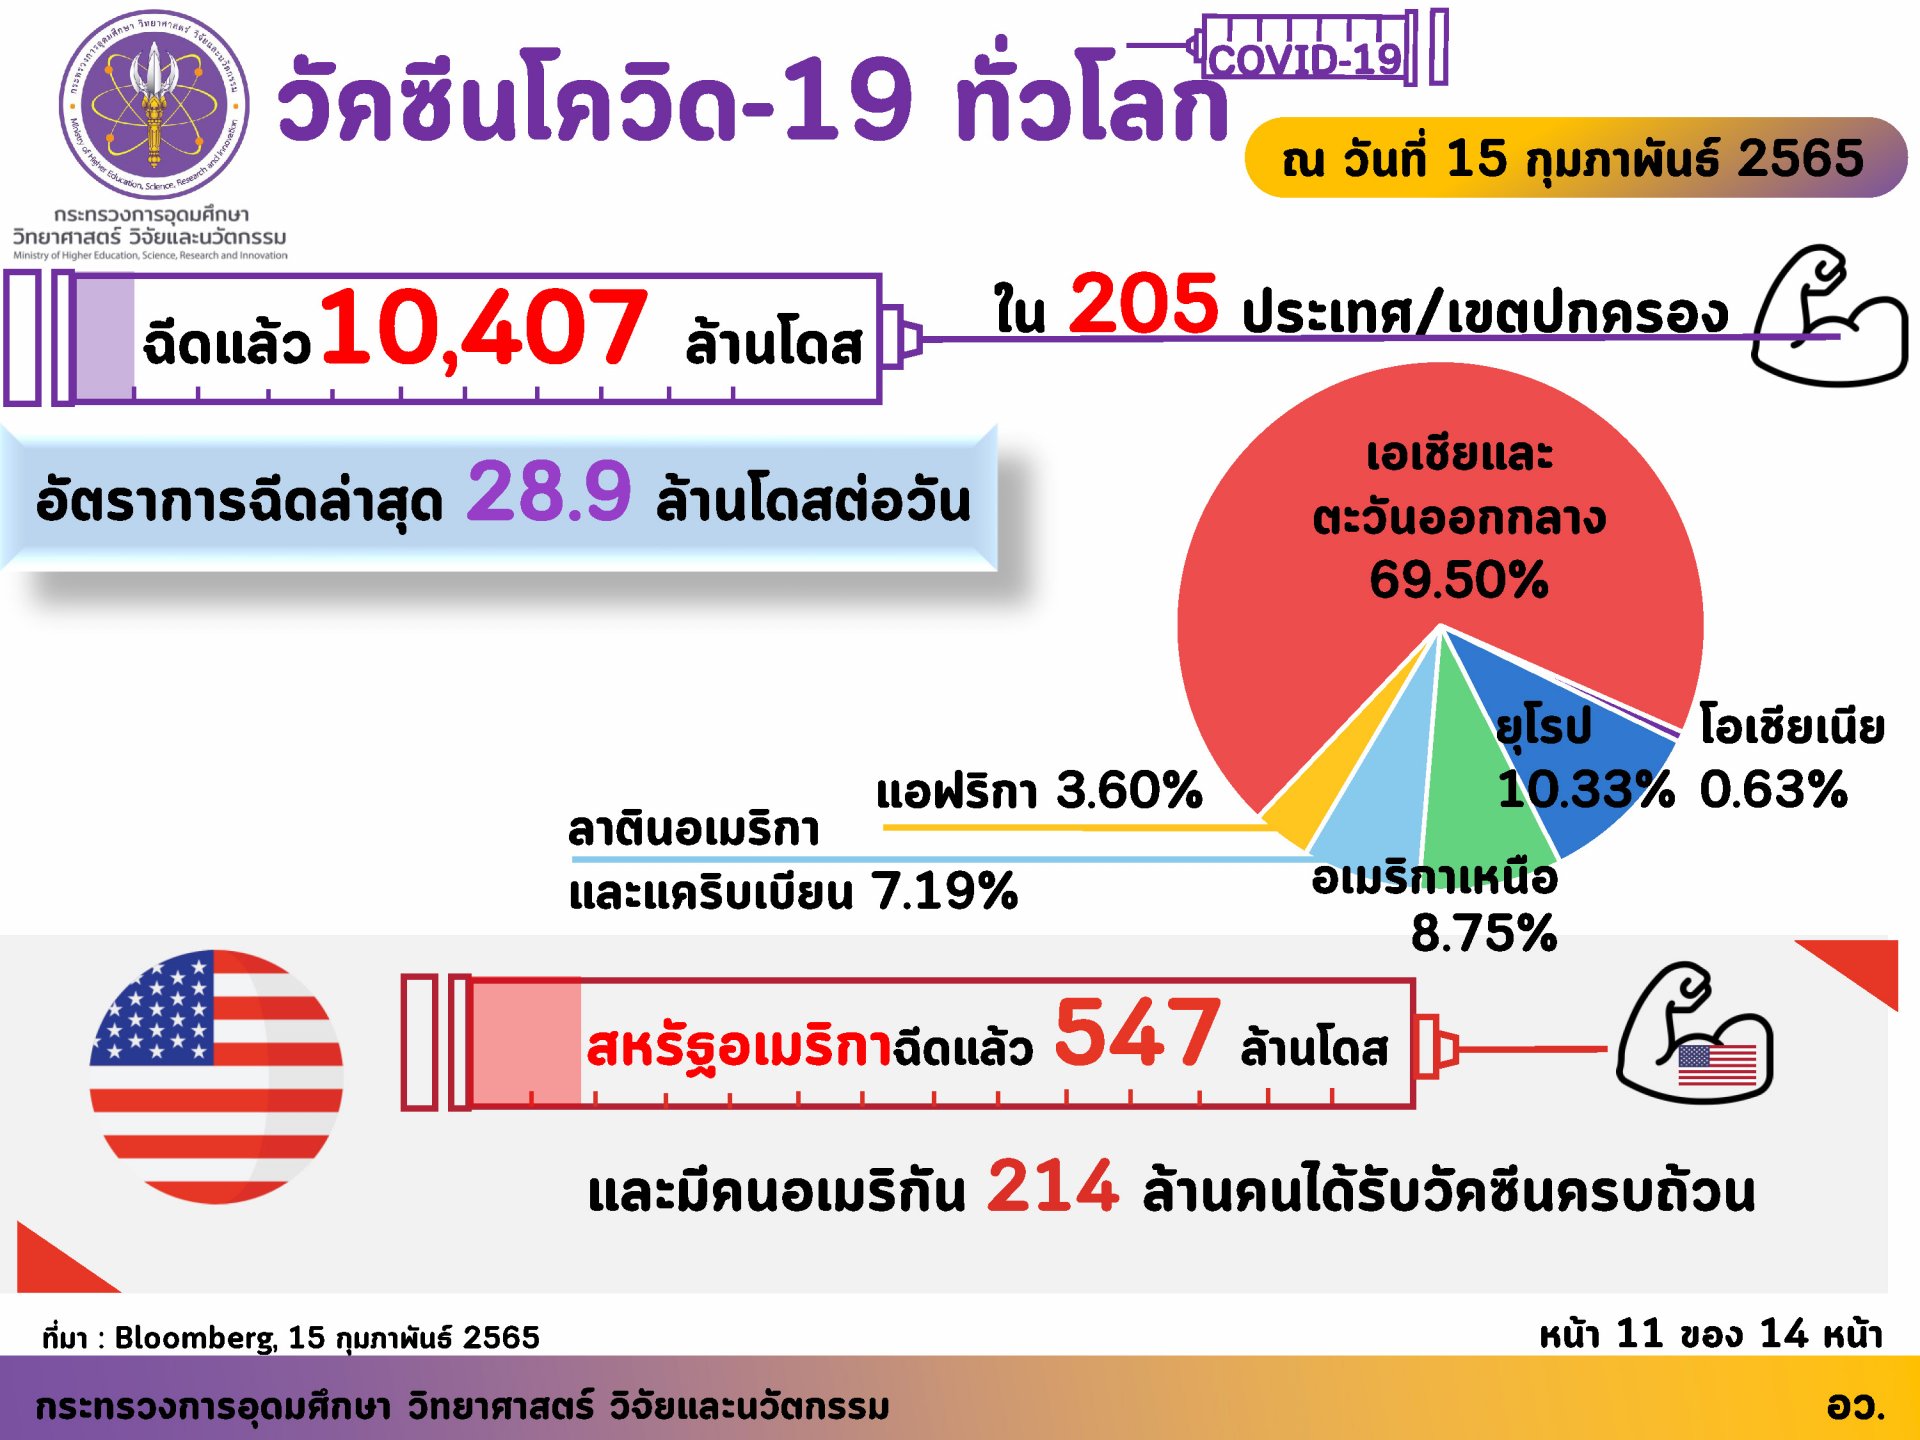 อว. เผยฉีดวัคซีนของไทย ณ วันที่ 15 กุมภาพันธ์ 2565 ฉีดวัคซีนแล้ว 120,217,187 โดส และทั่วโลกแล้ว 10,407 ล้านโดส ใน 205 ประเทศ/เขตปกครอง ส่วนอาเซียนฉีดแล้วทุกประเทศ รวมกันกว่า 935.7 ล้านโดส โดยกรุงเทพฯ ยังเป็นพื้นที่ฉีดวัคซีนเข็ม 1 มากสุด (112.4%)